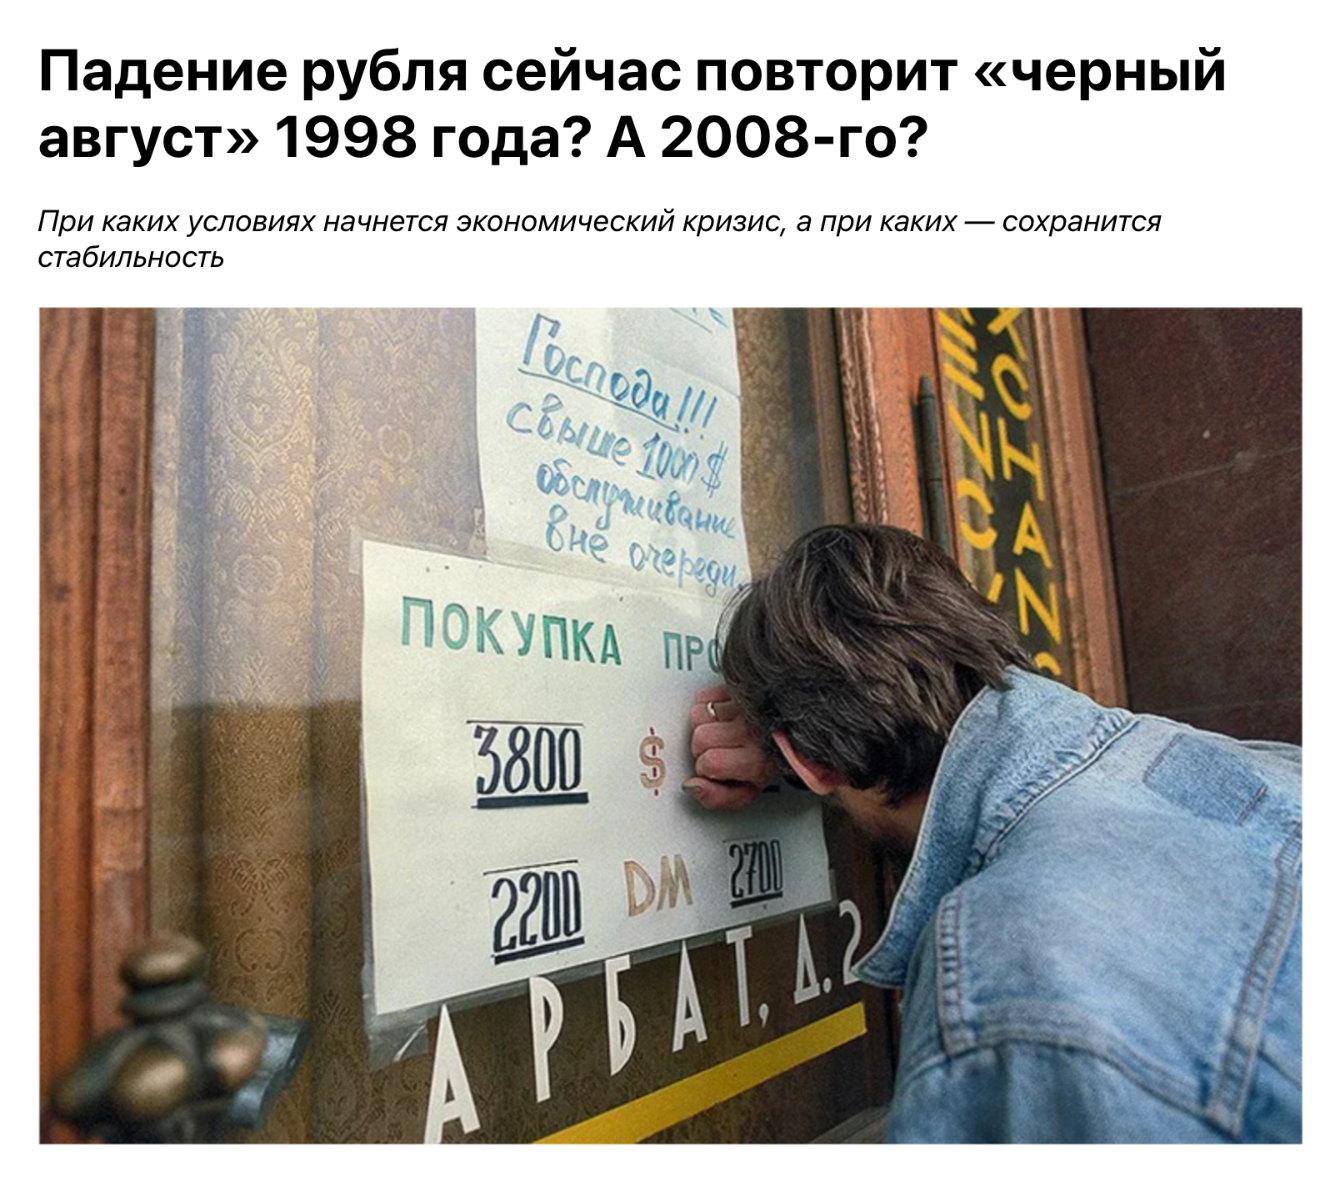 Заголовки российских СМИ. Источник: «Ура⁠-⁠ру»